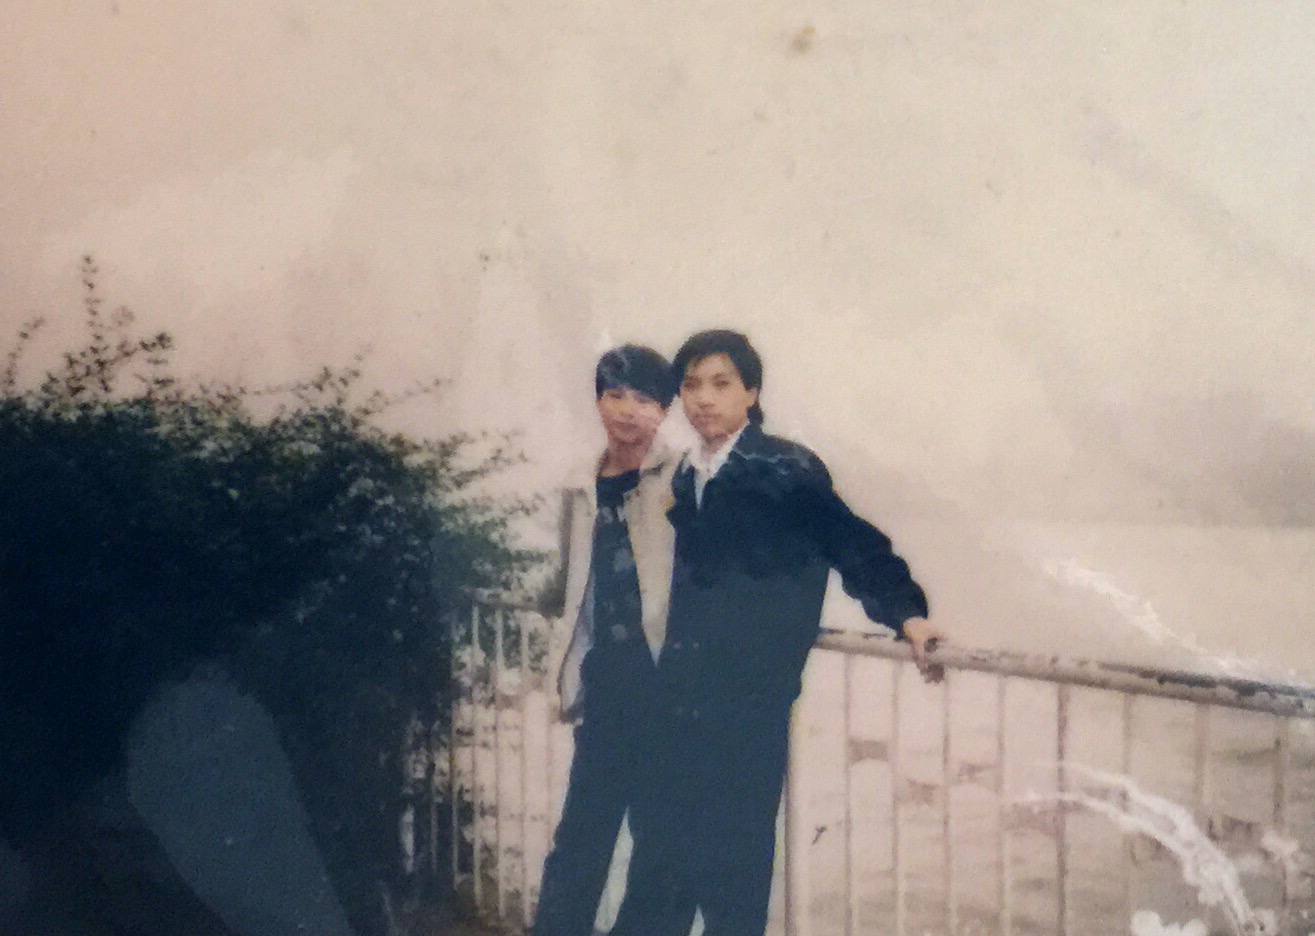 19 89年某月某日，芳村小食店拍档郑永东，韶关翁源人。三十多年见到面。拍照地点沙面珠江边。